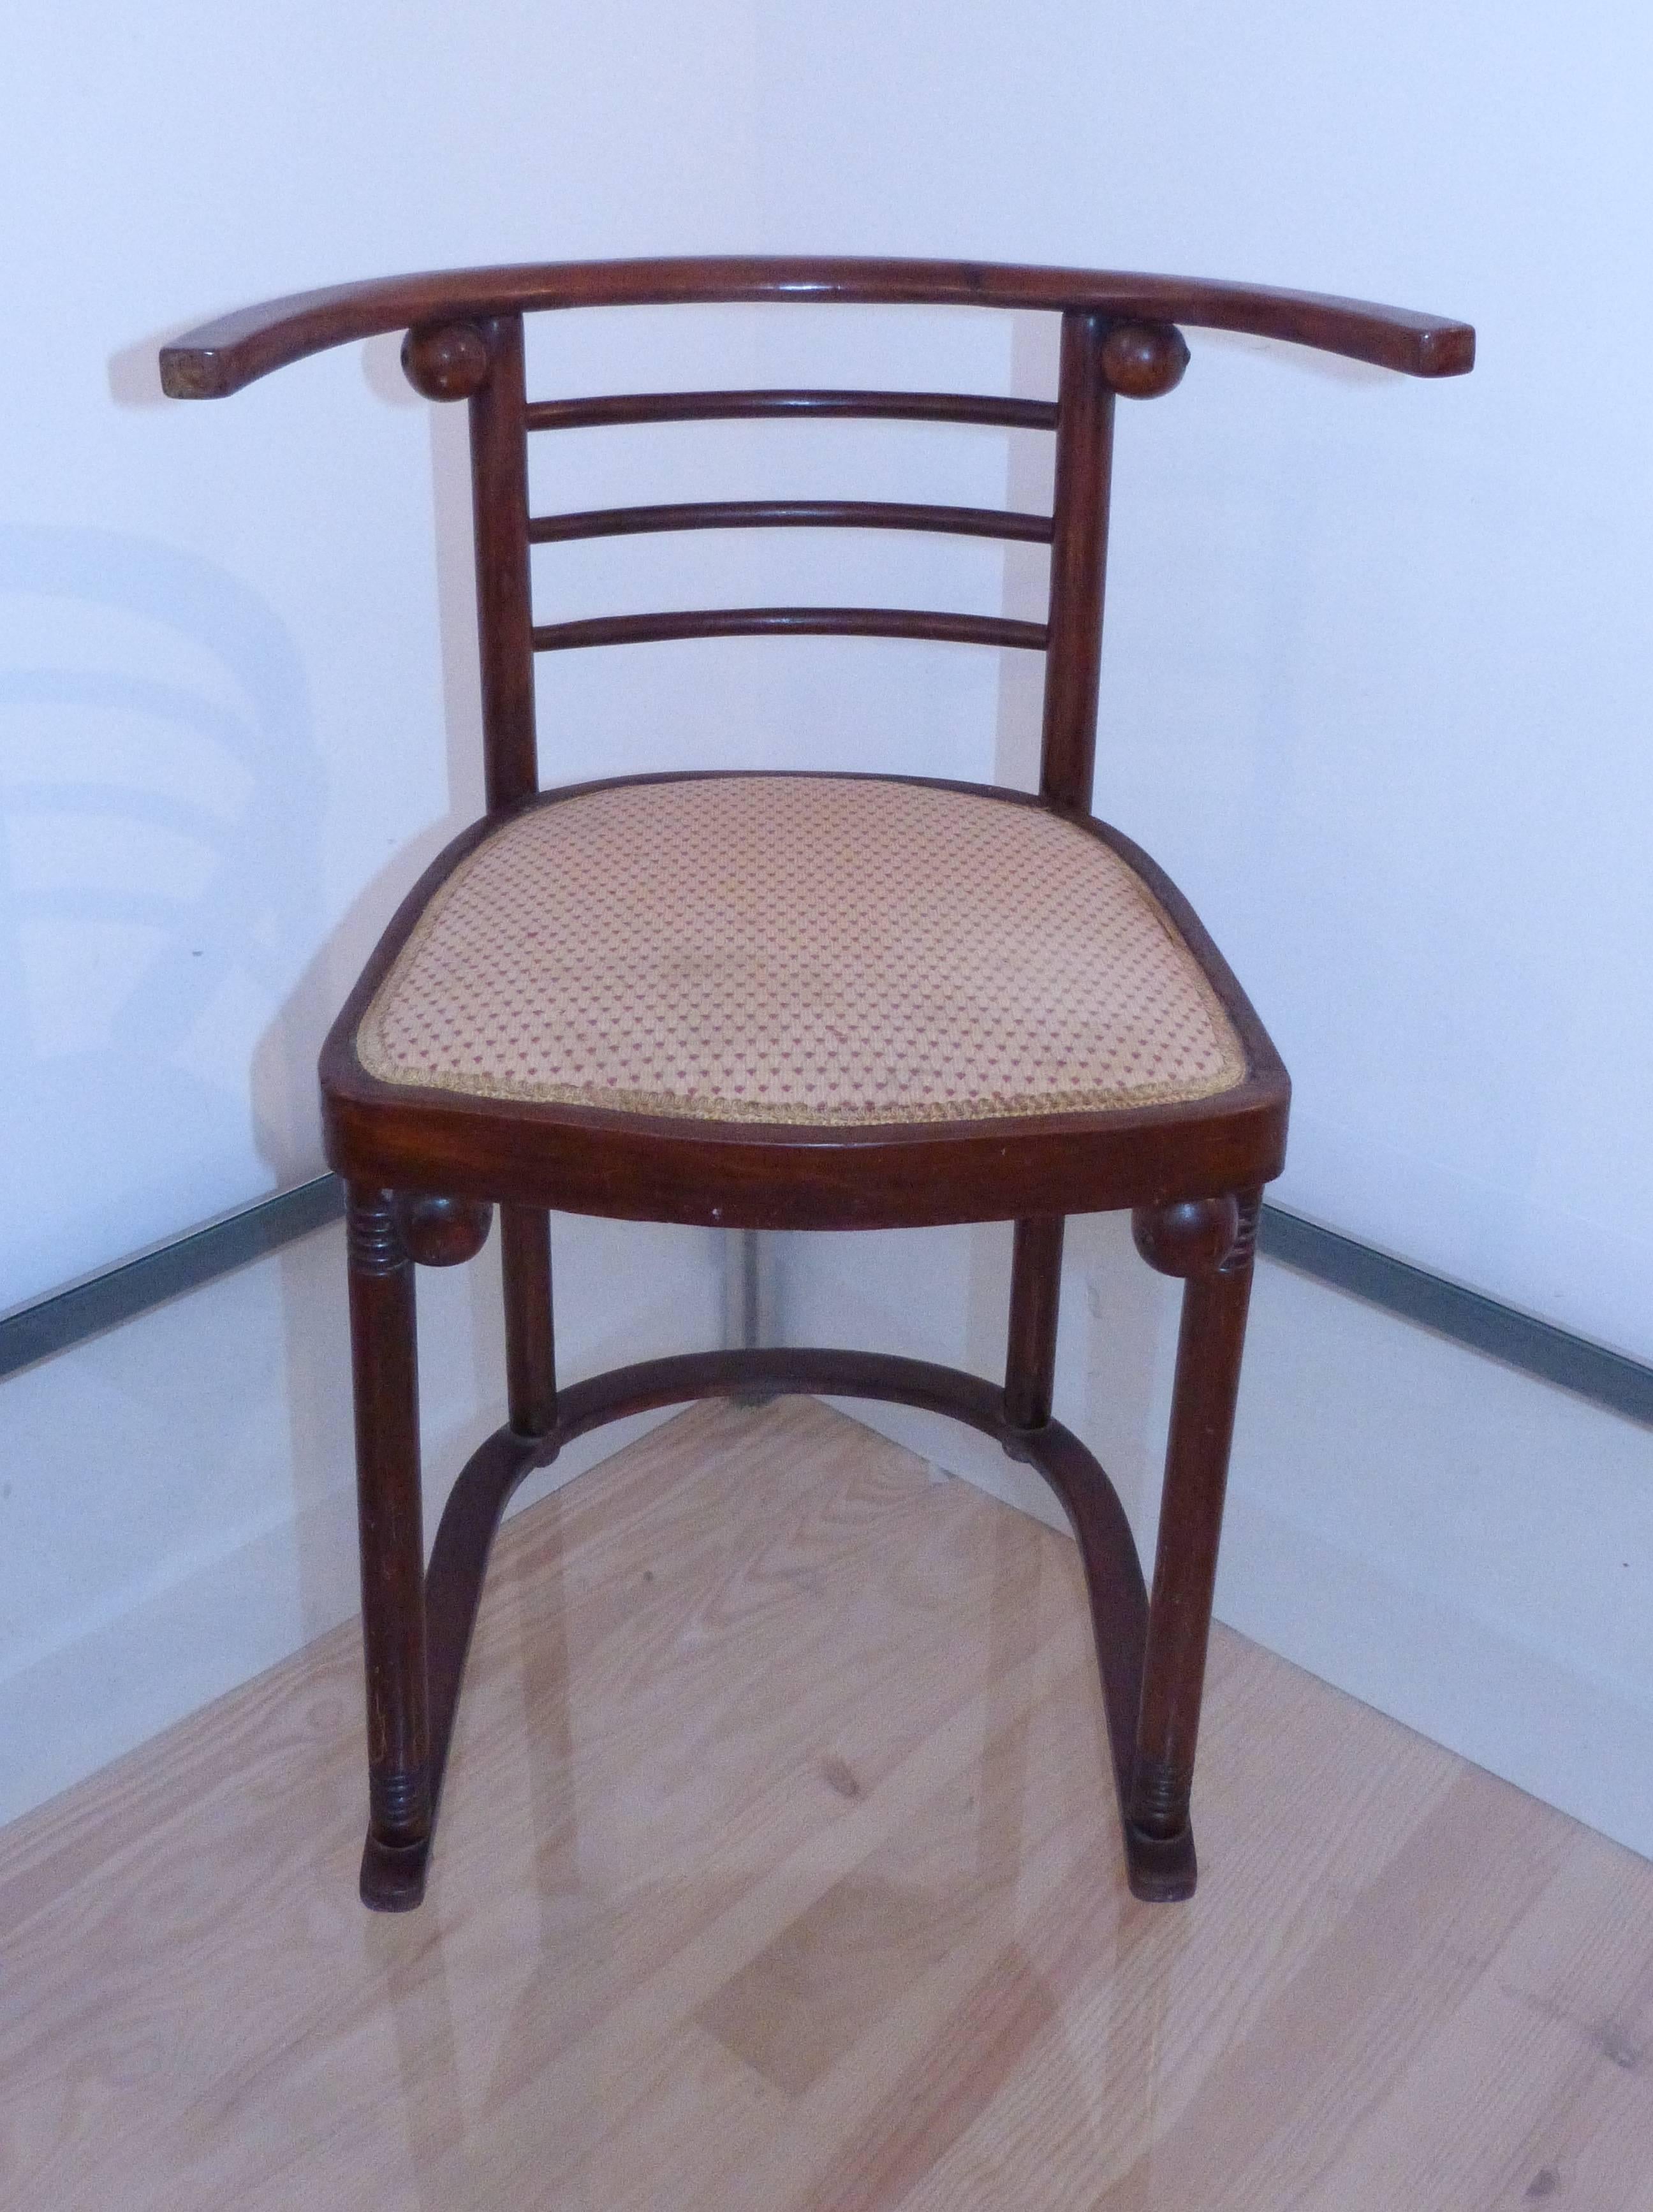 Bentwood Set of Three Fledermauss Chairs by Josef Hoffmann 1905